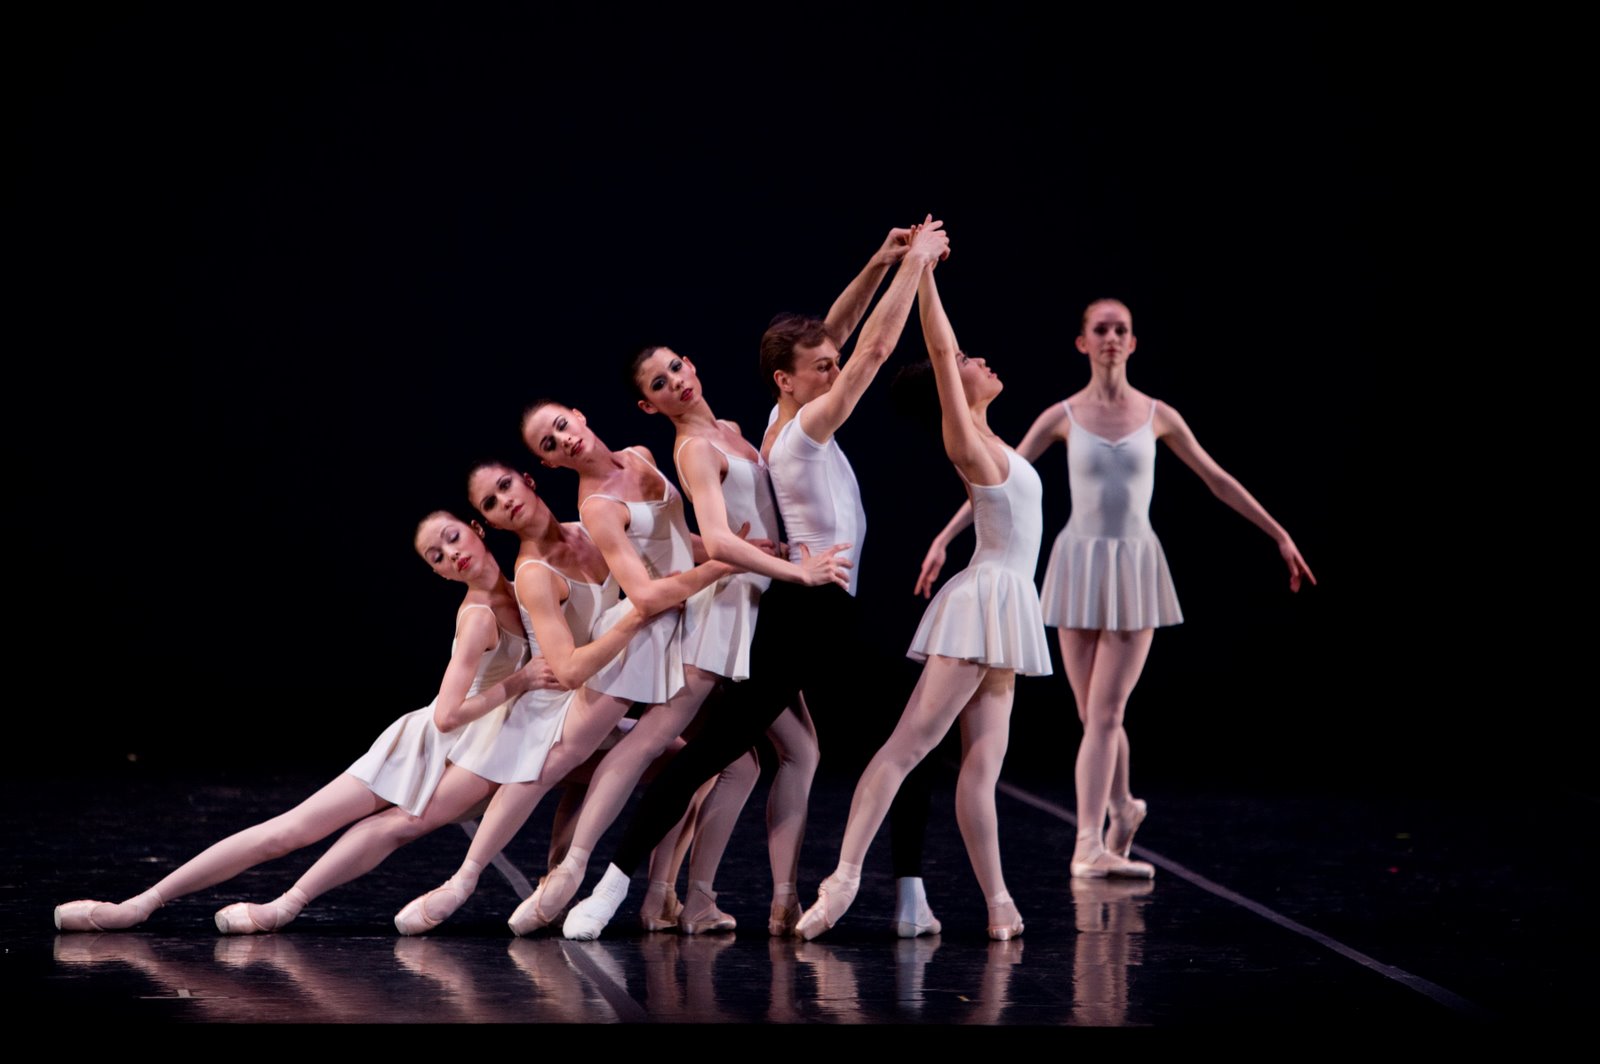 [Boston+Ballet+in+Concerto+Barocco+-+Copyright+New+York+City+Ballet+by+Rosalie+O'Connor.JPG]